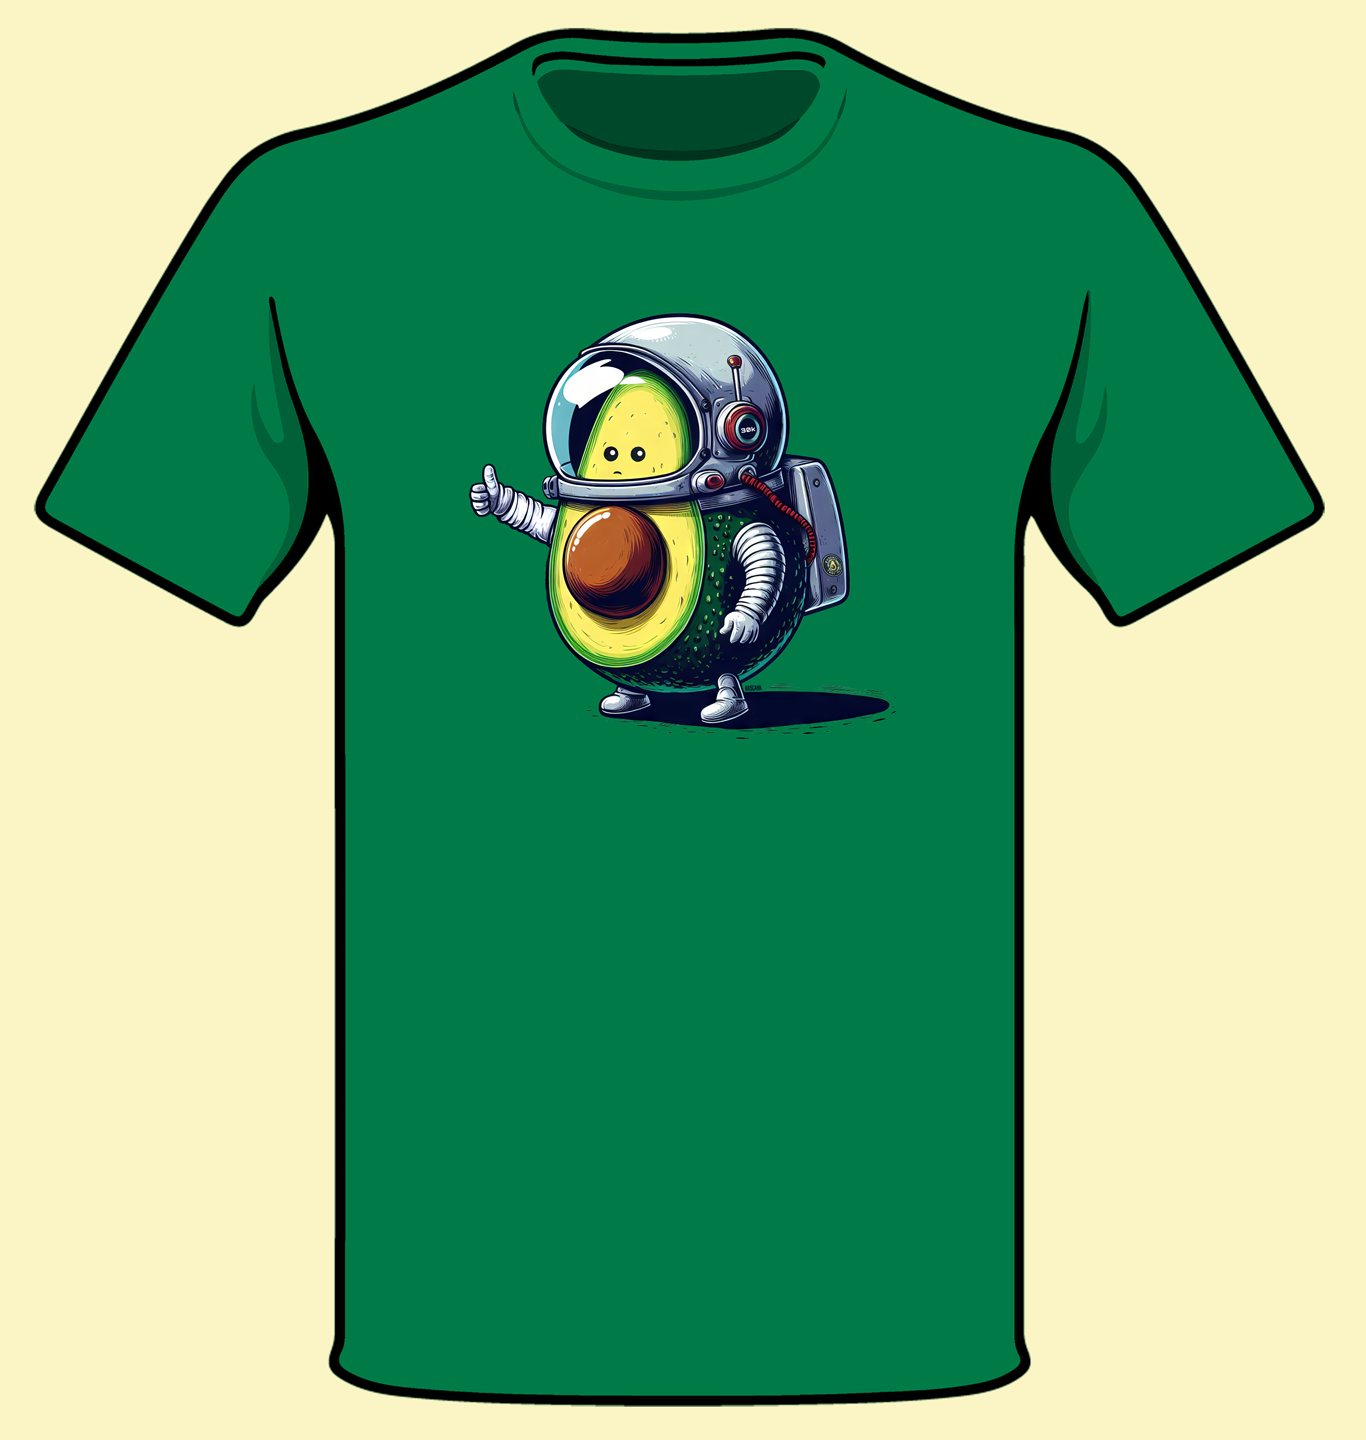 Avocado Test Pilot t-shirt